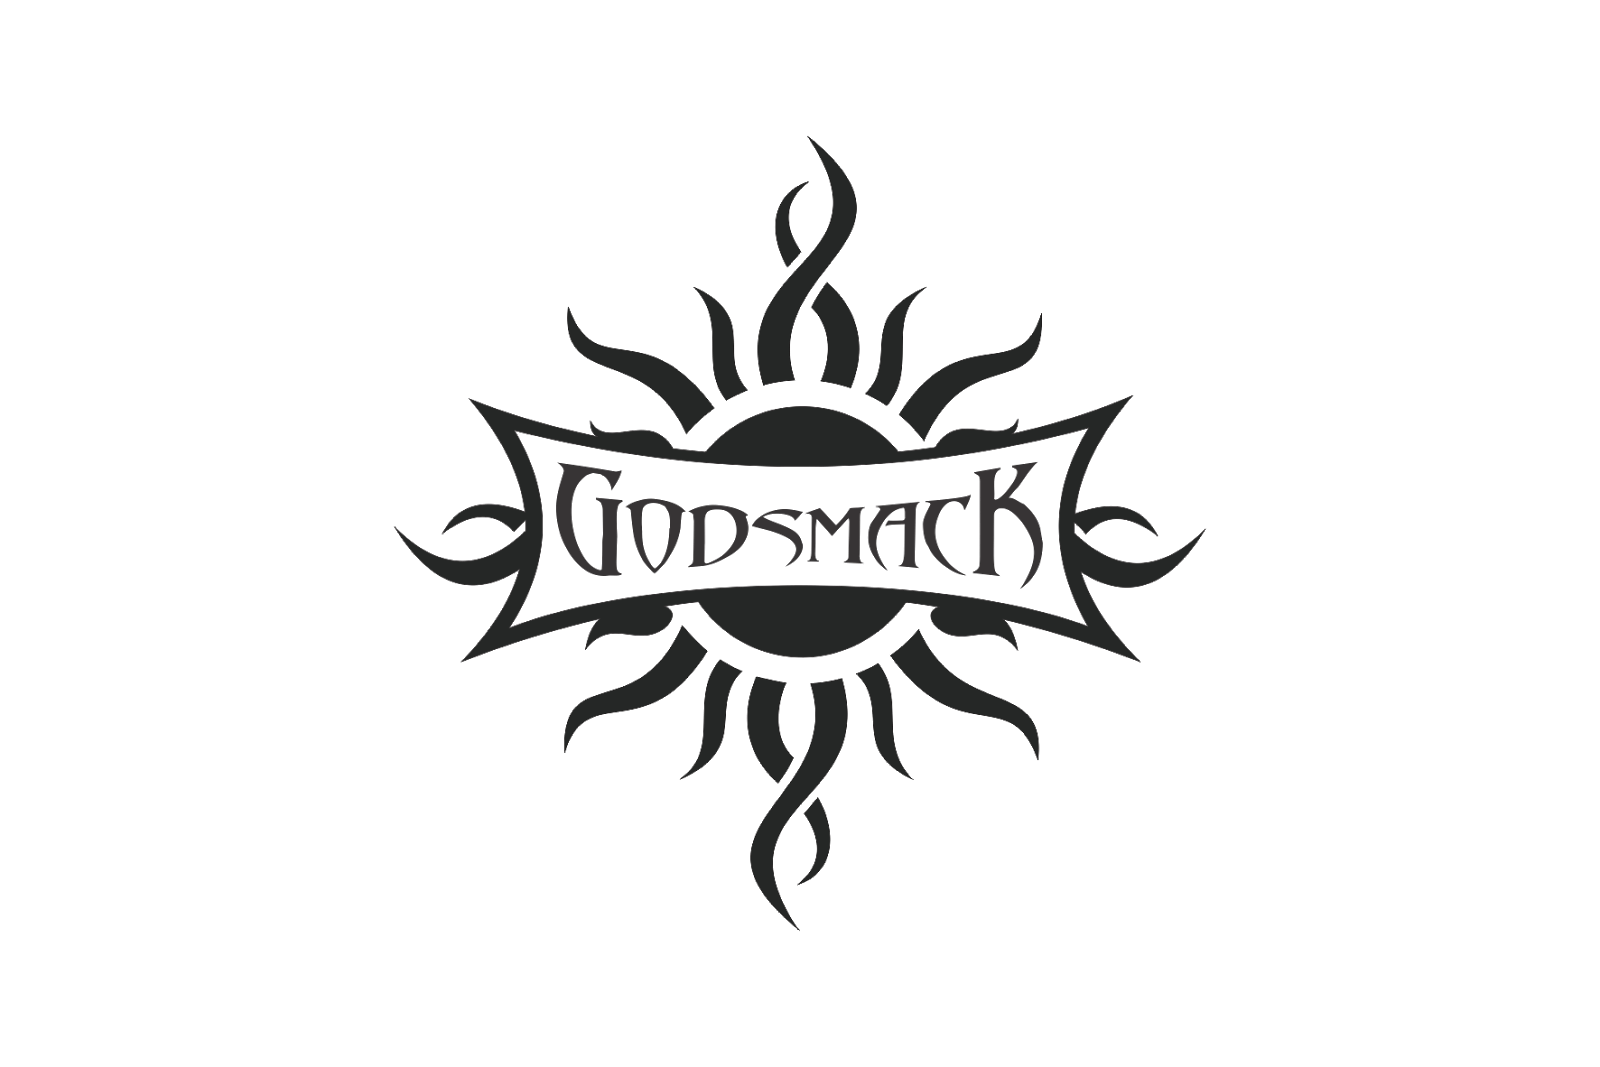 Godsmack Sun Logo - Godsmack Sun Logo